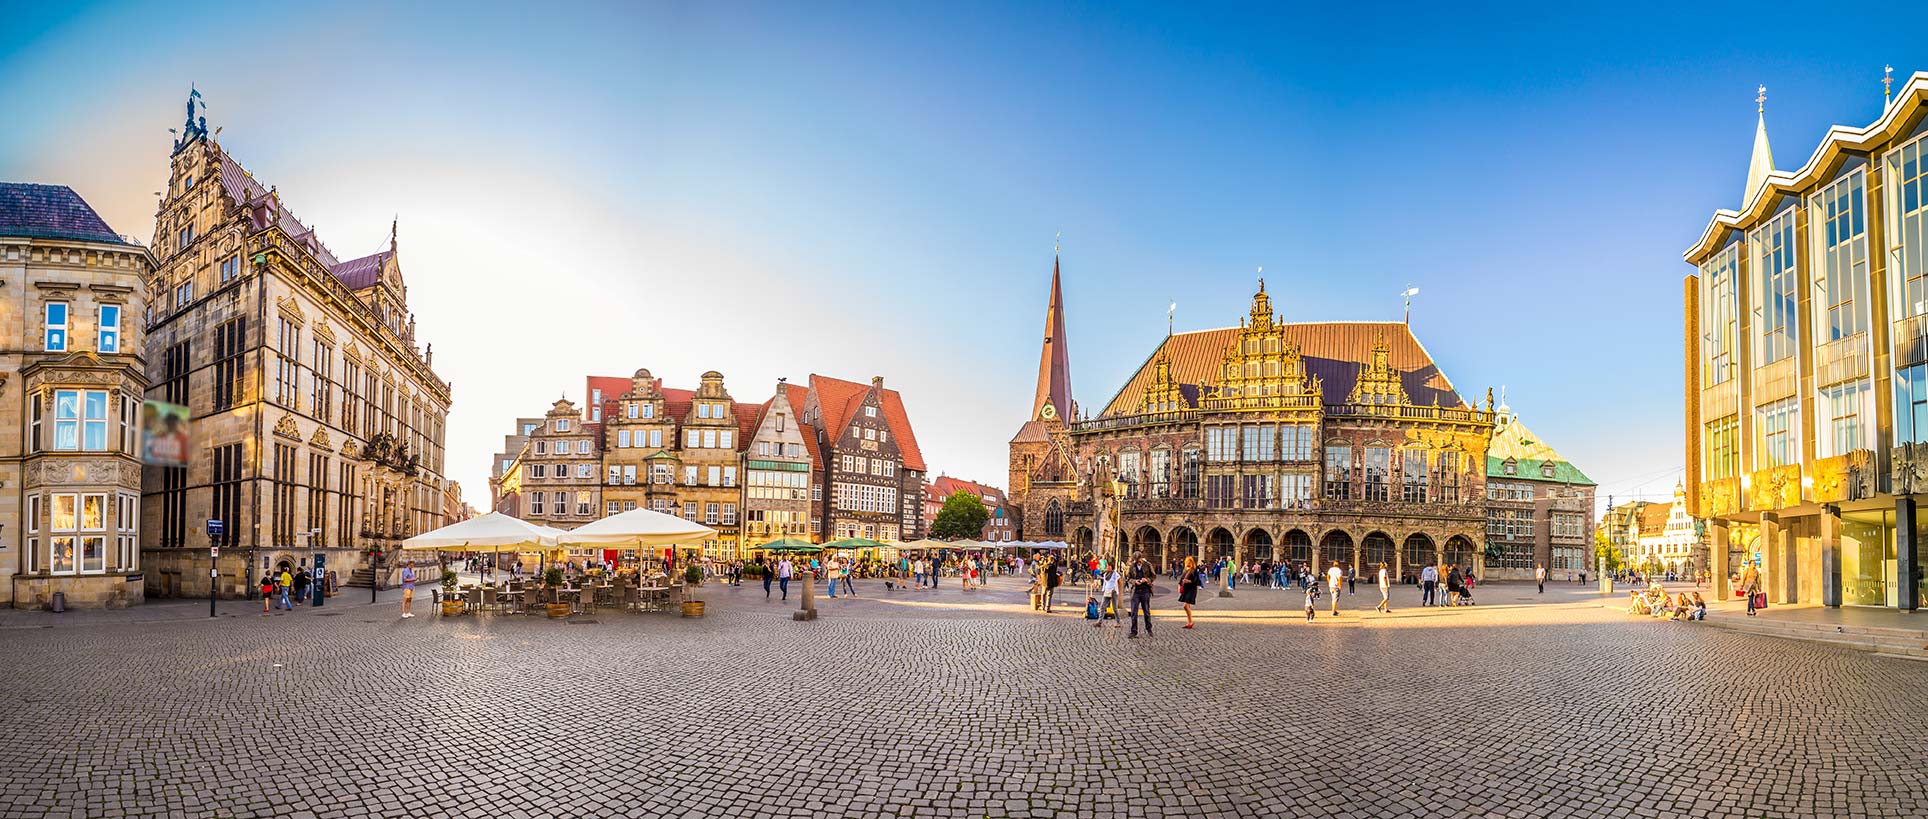 Ansicht des Marktplatzes von Bremen